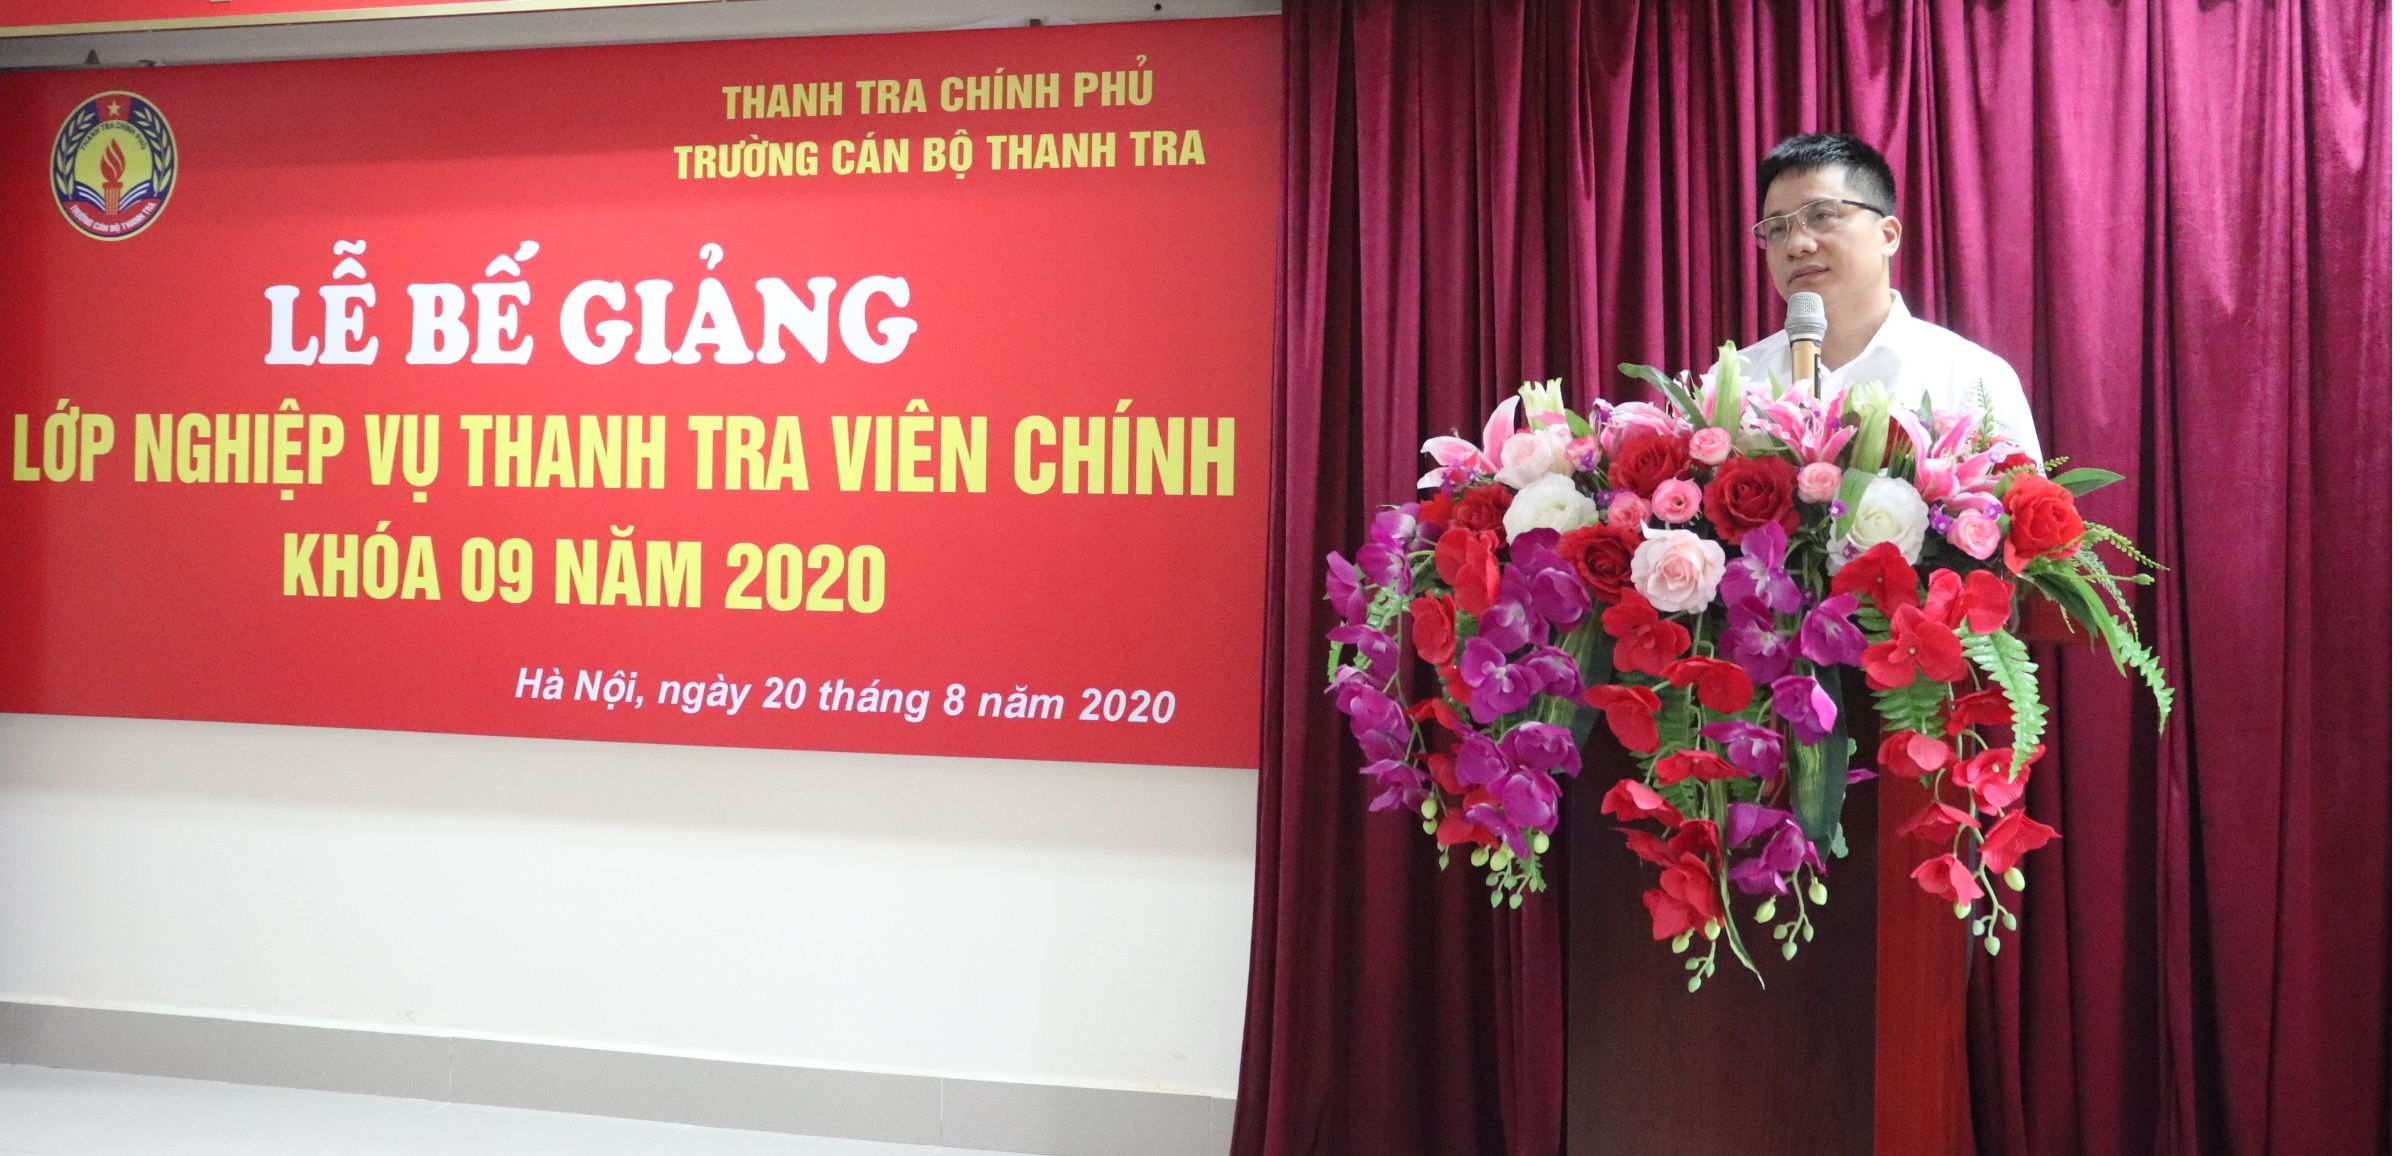 TS Trịnh Văn Toàn TTVC Phó Hiệu trưởng trg CBTT phát biểu bế giảng khóa học